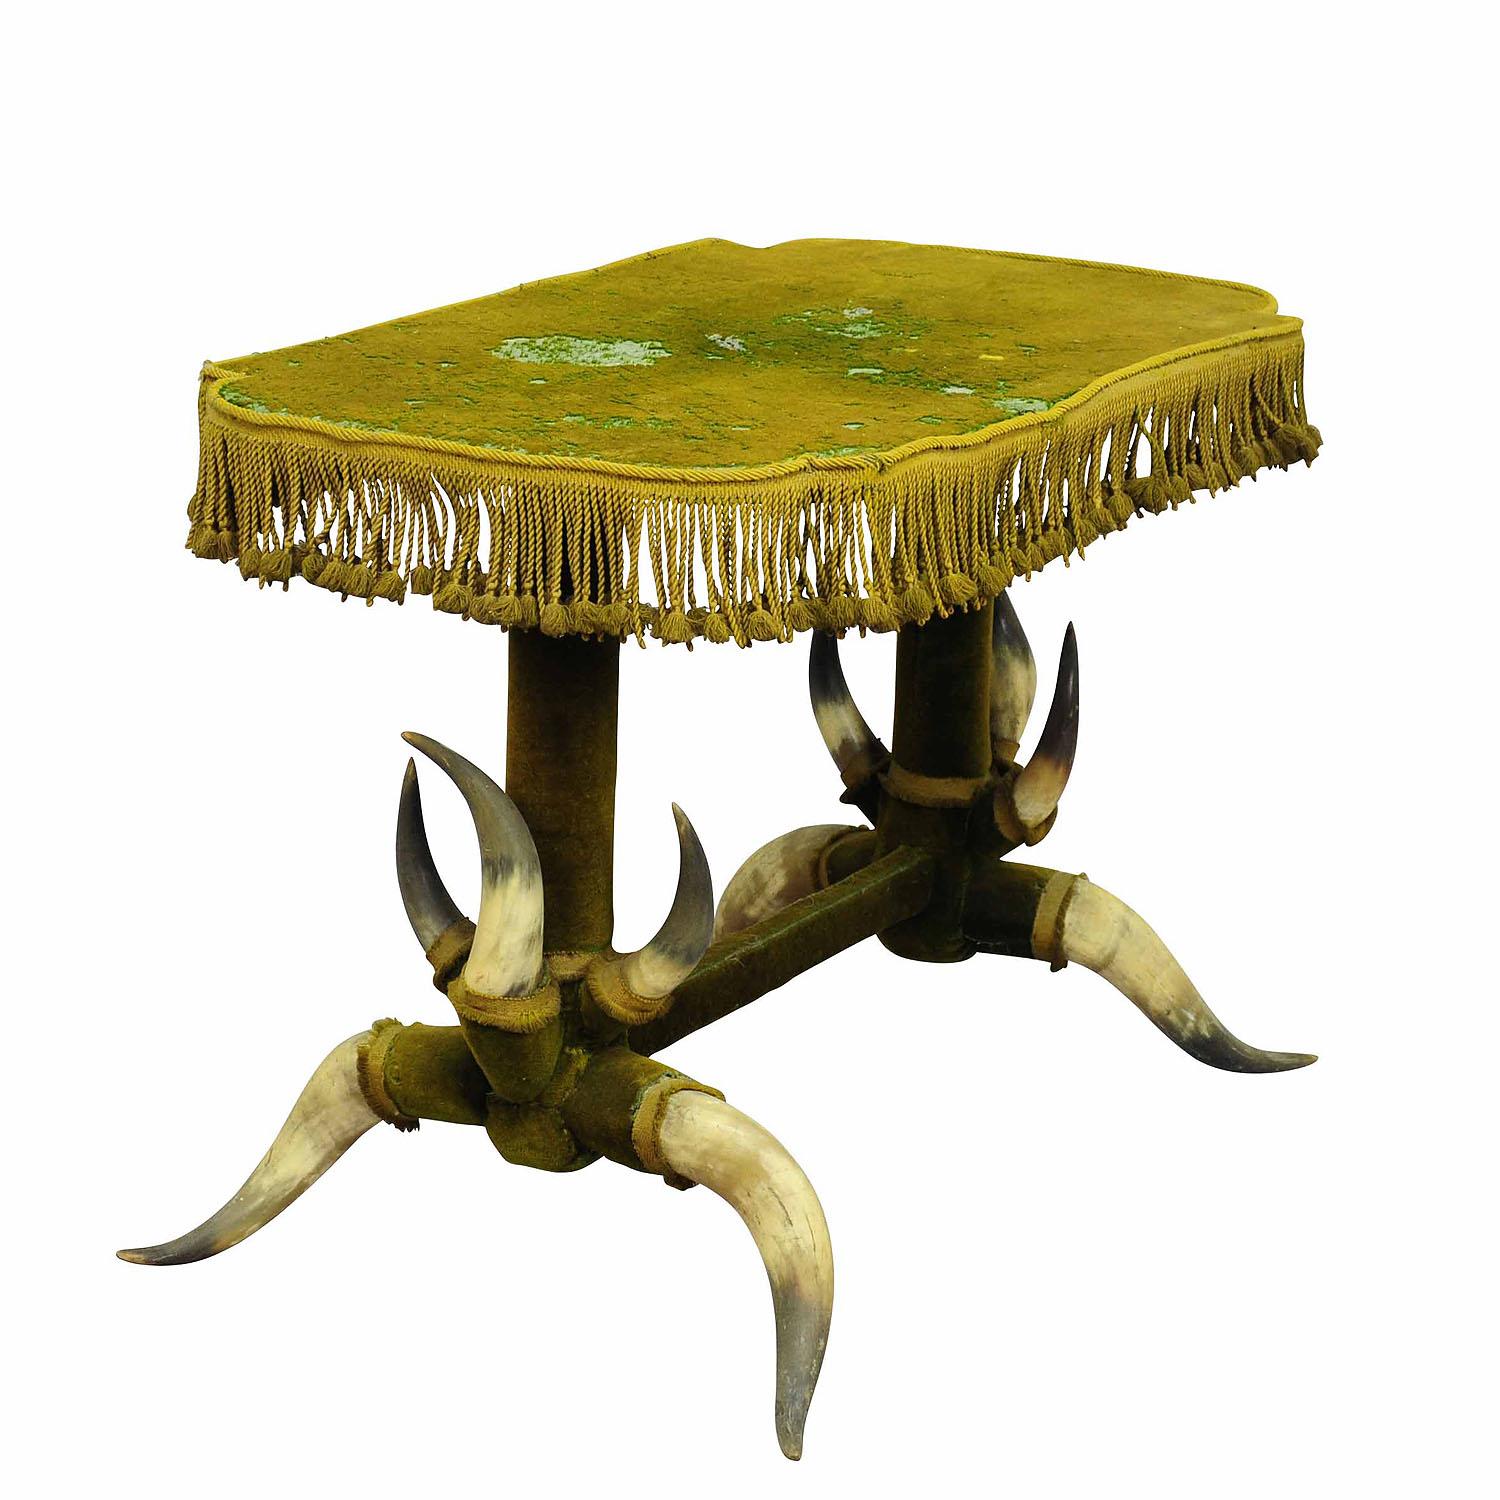 Ancienne table en bois de taureau avec velours vert, vers 1870

Une table en bois de taureau vers 1870, recouverte de velours vert d'origine qui doit être renouvelé (perd des poils). 1870, recouverte d'un velours vert d'origine qui doit être